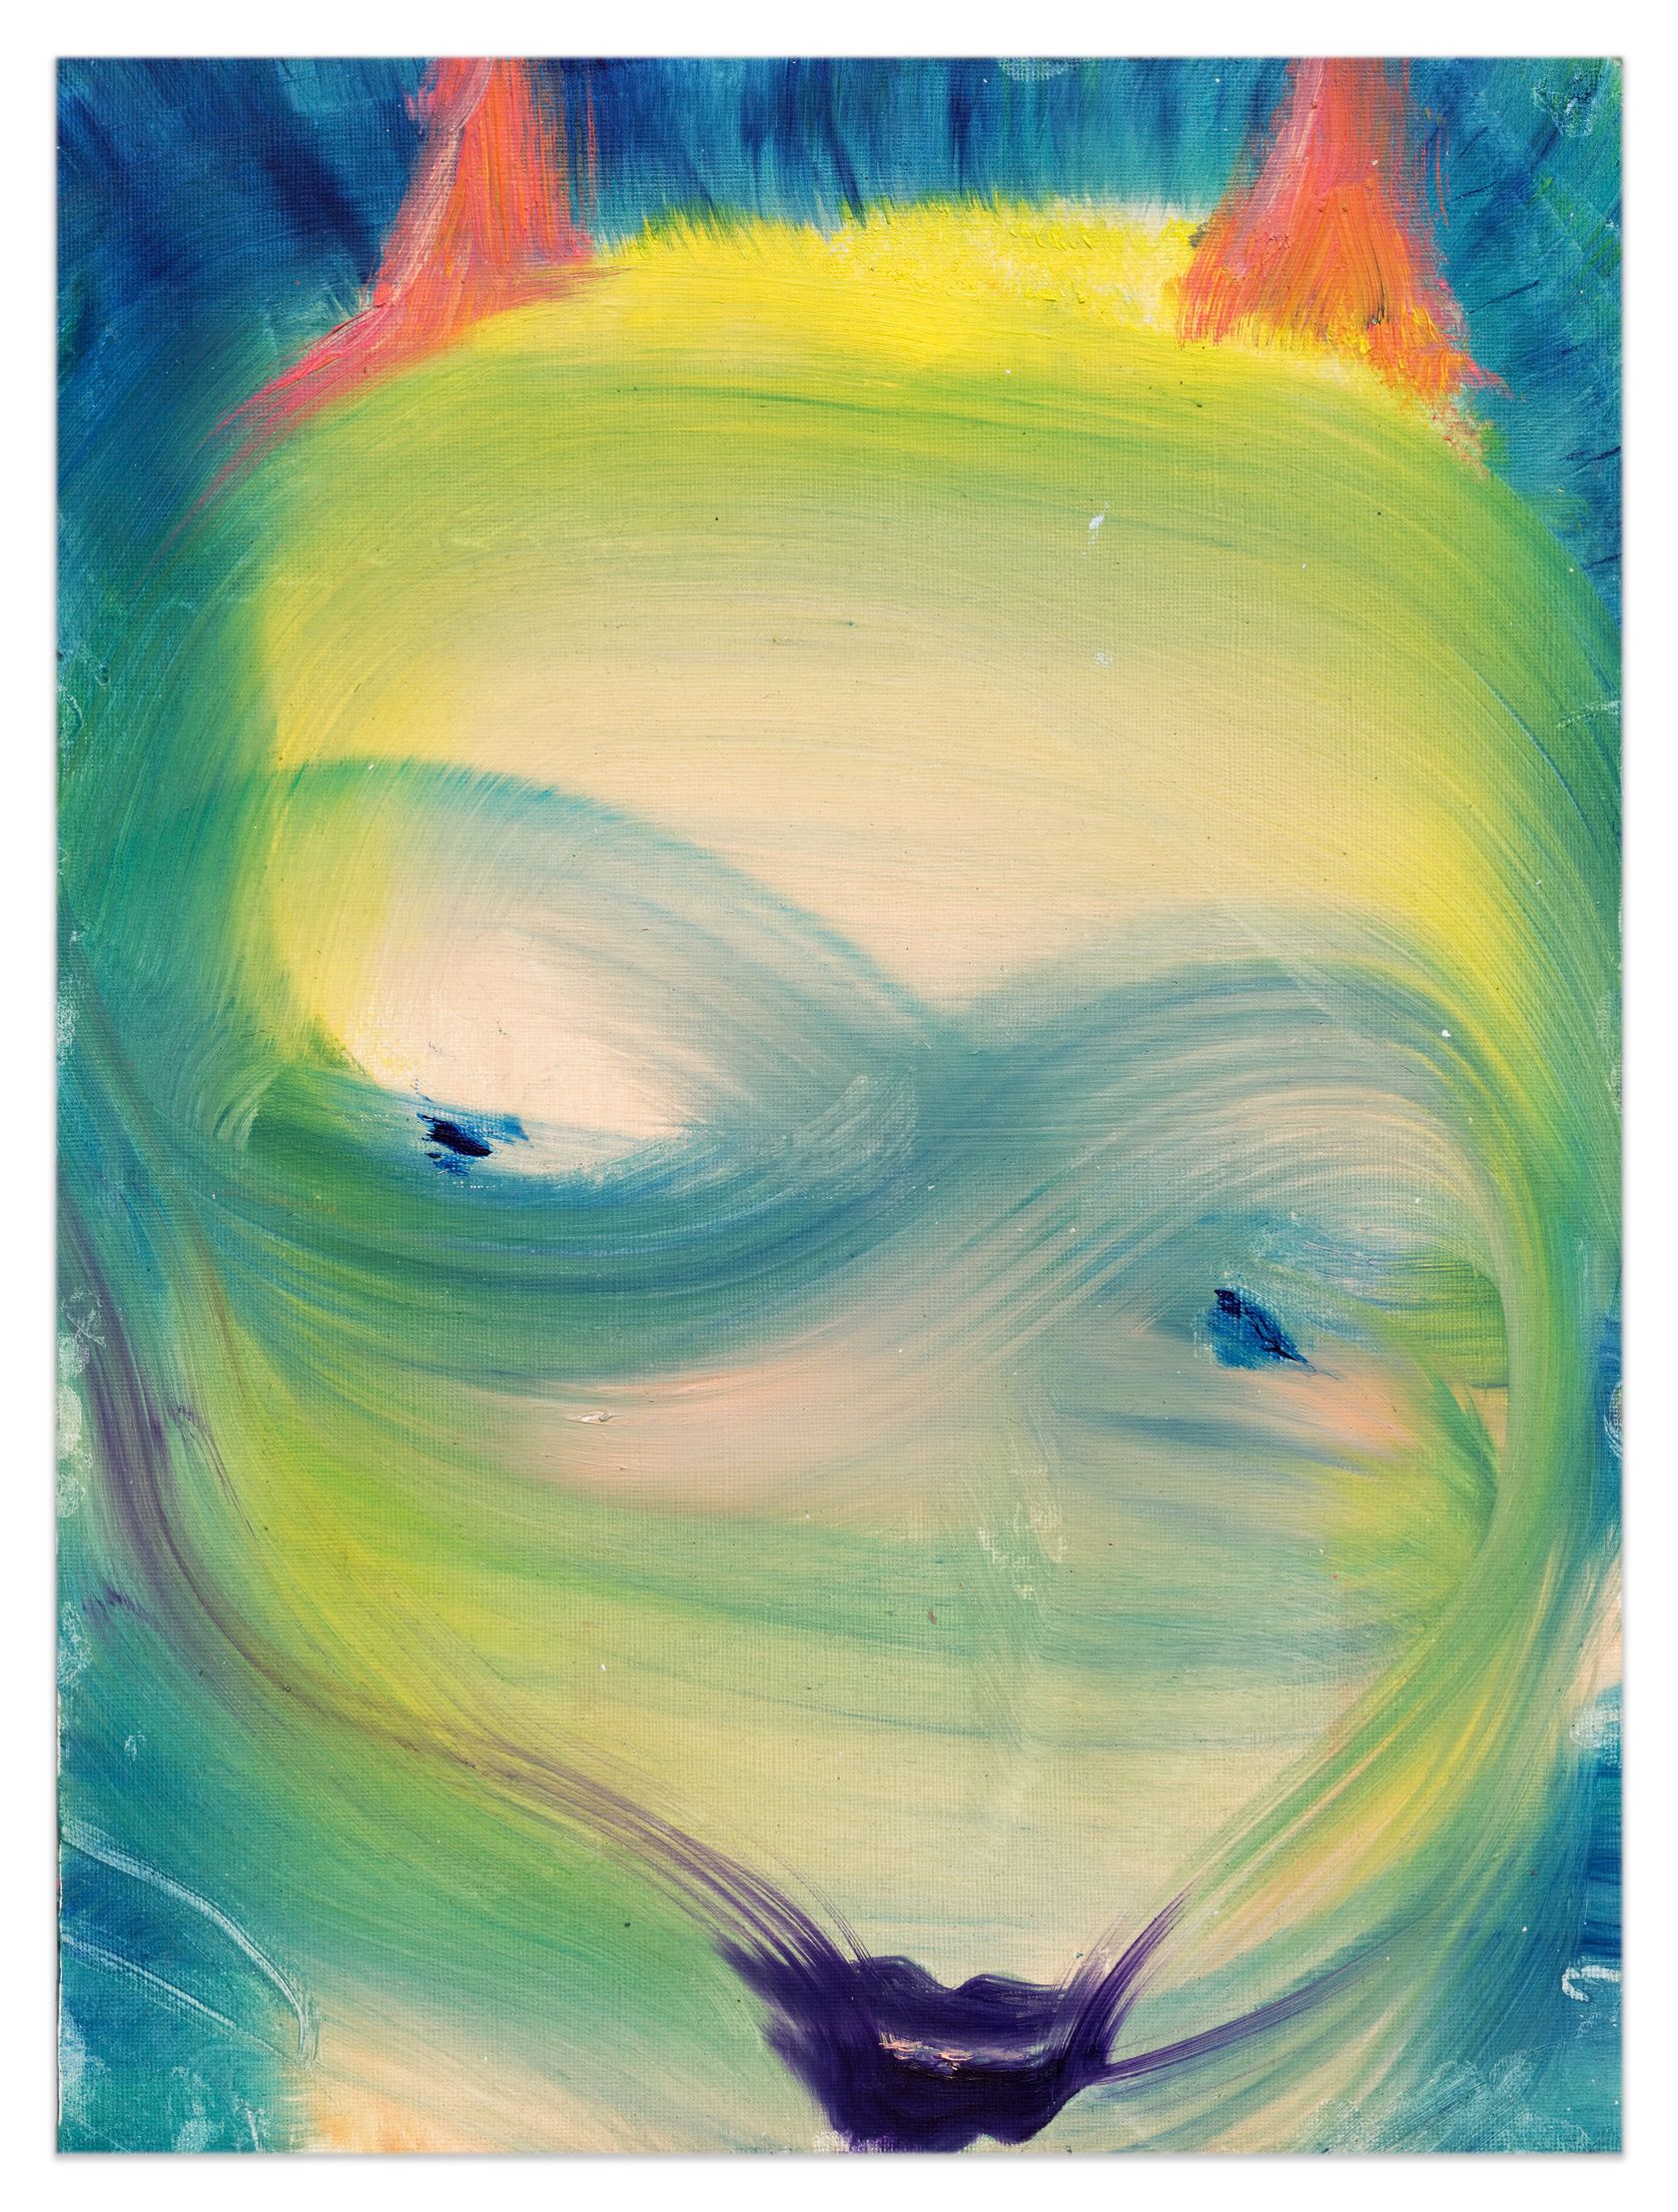 Aneta Kajzer, Devilman, 2022 Huile sur papier40 × 30 cm / 15 3/4 × 11 6/8 in. | 49 × 39 × 3.5 cm / 19 2/8 × 15 3/8 × 1 3/8 in. (encadré/framed)